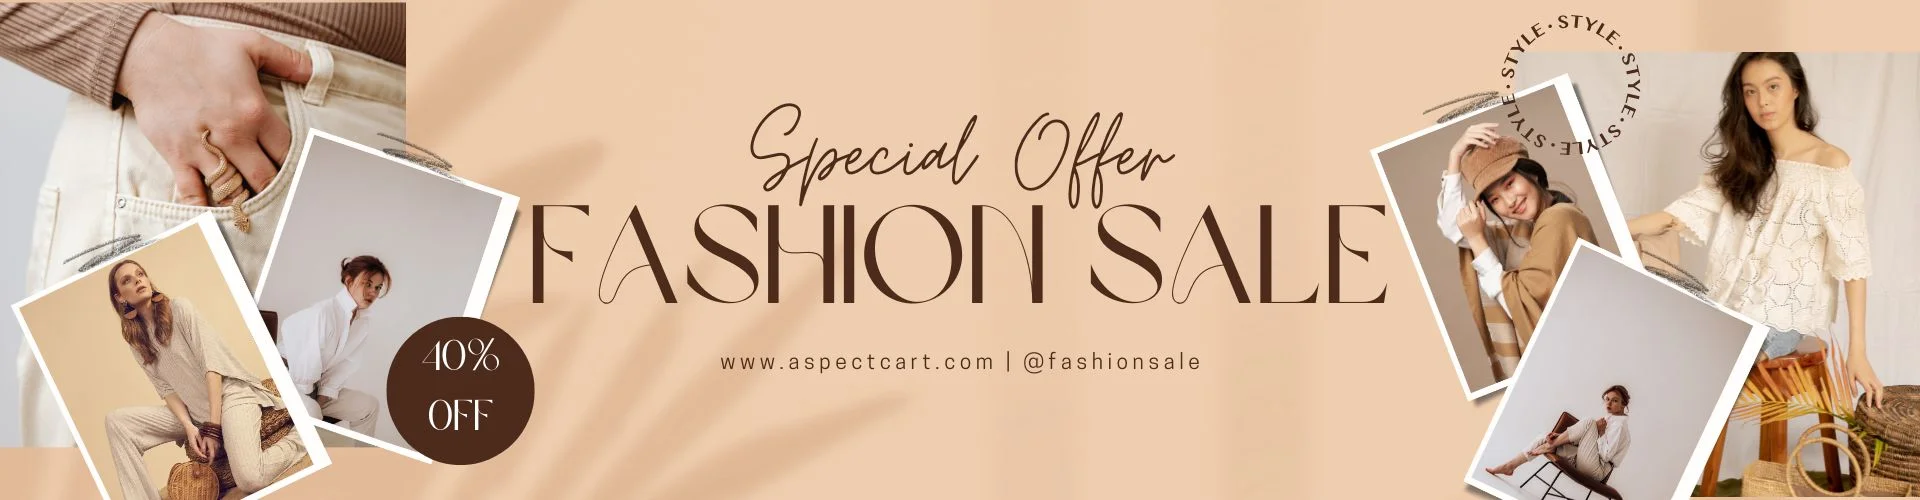 Banner per un'offerta speciale in un negozio di moda online